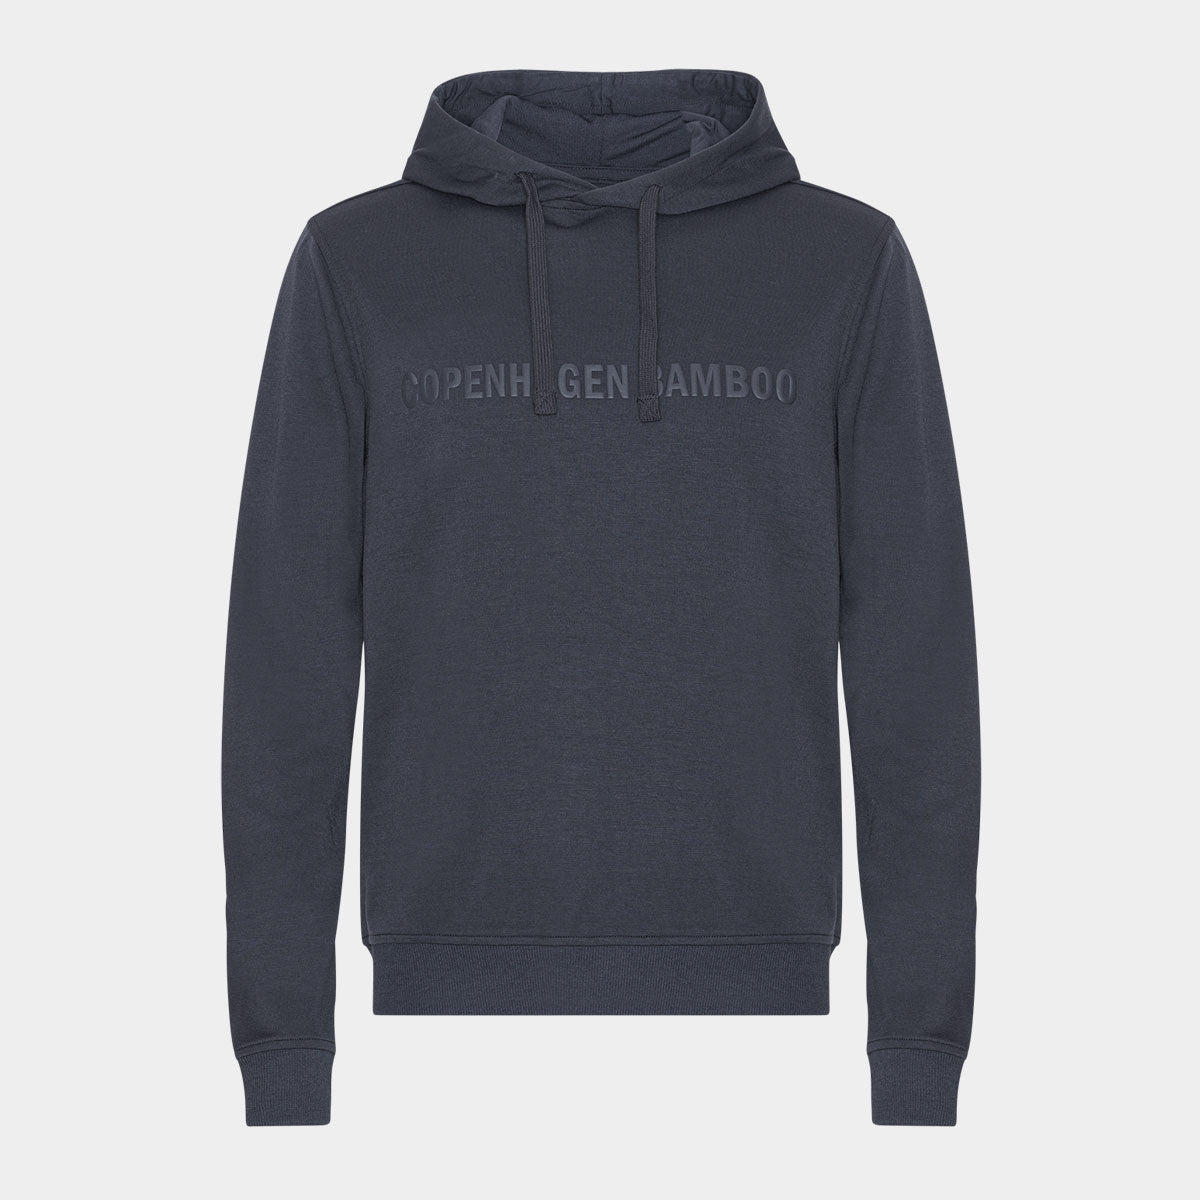 Se Mørkegrå bambus hoodie til mænd med logo fra Copenhagen Bamboo, S hos Bambustøj.dk